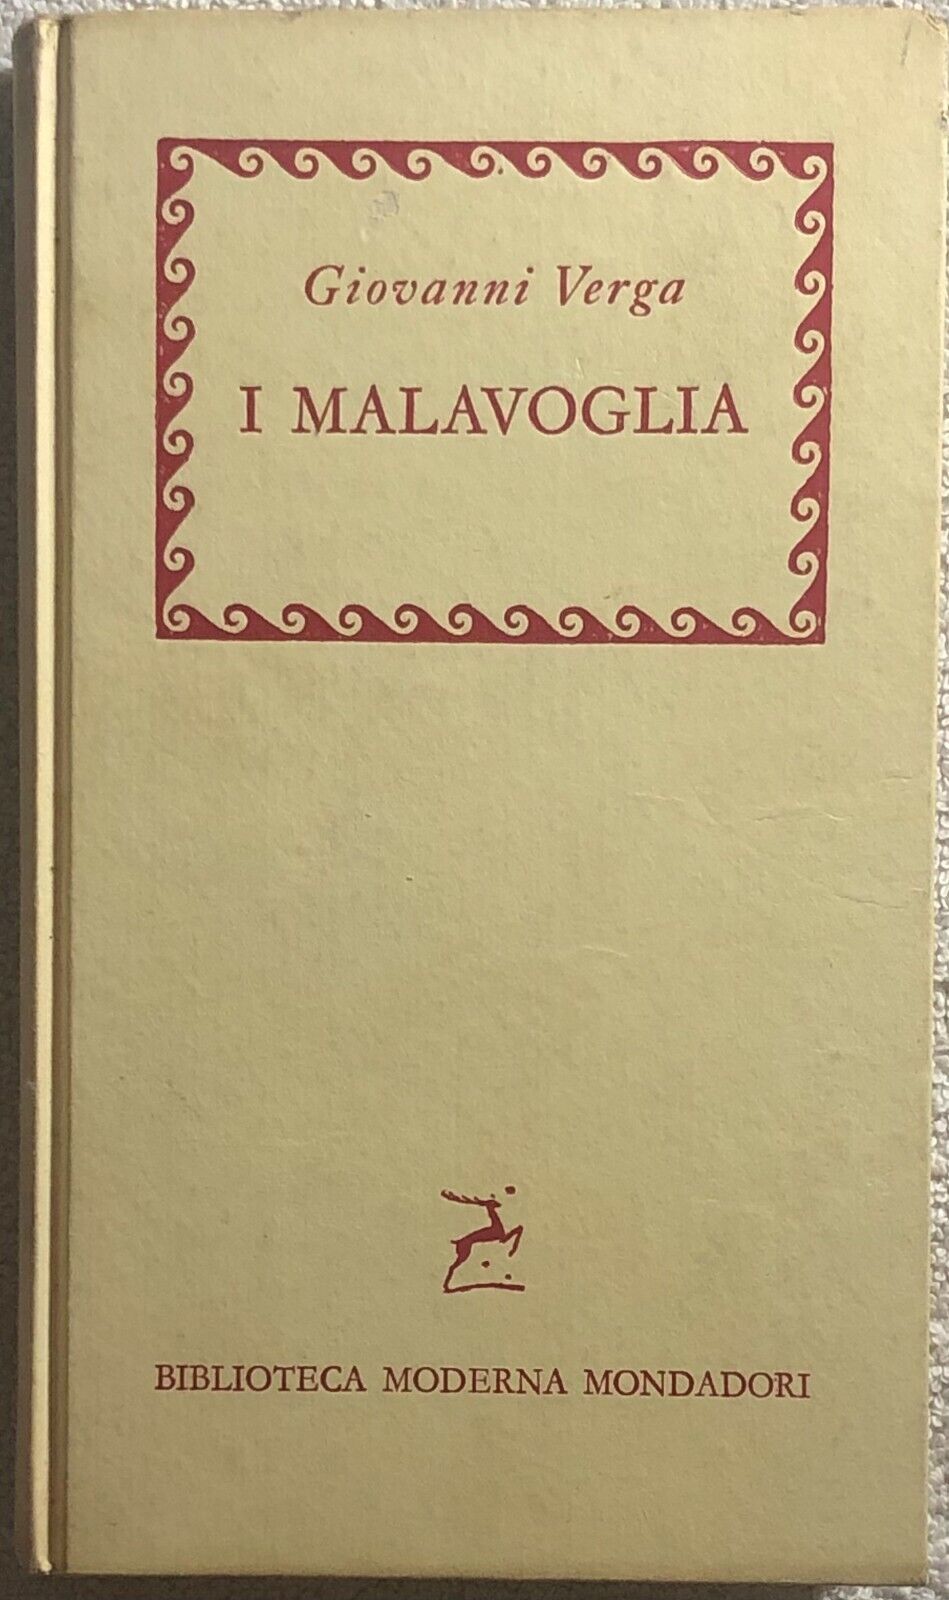 I Malavoglia di Giovanni Verga,  1959,  Mondadori